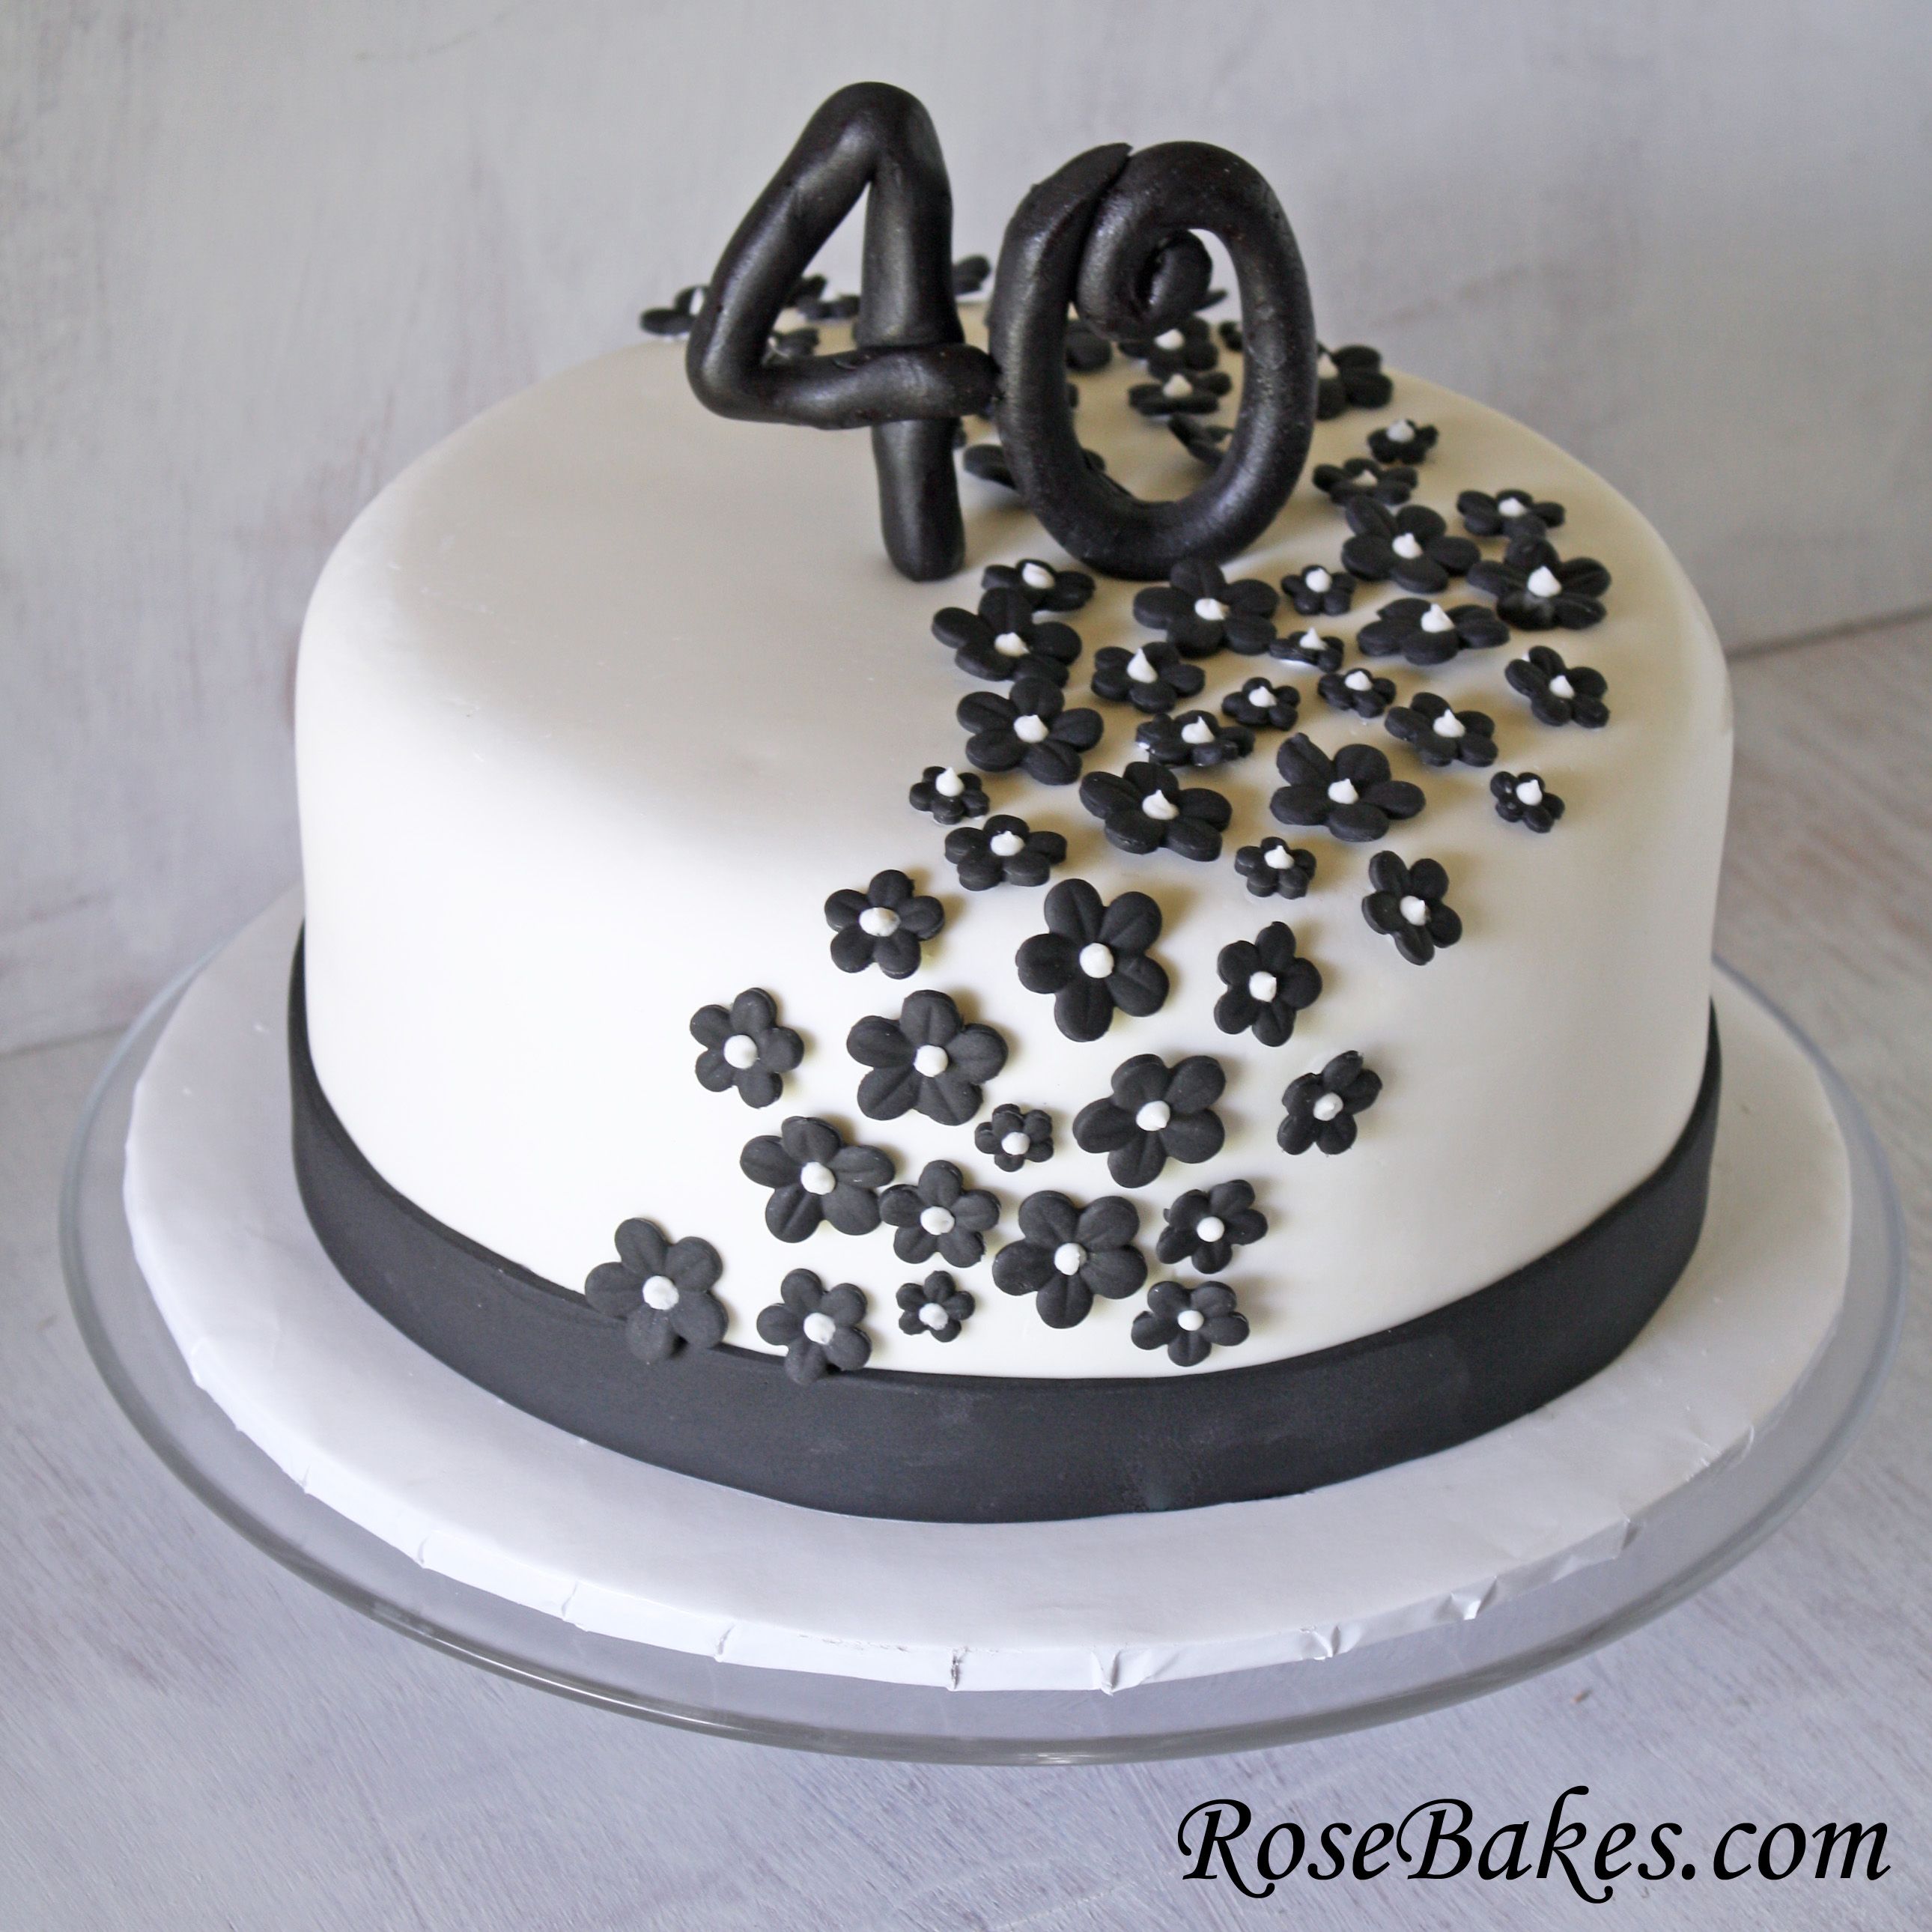 Украшения торта на 40 лет